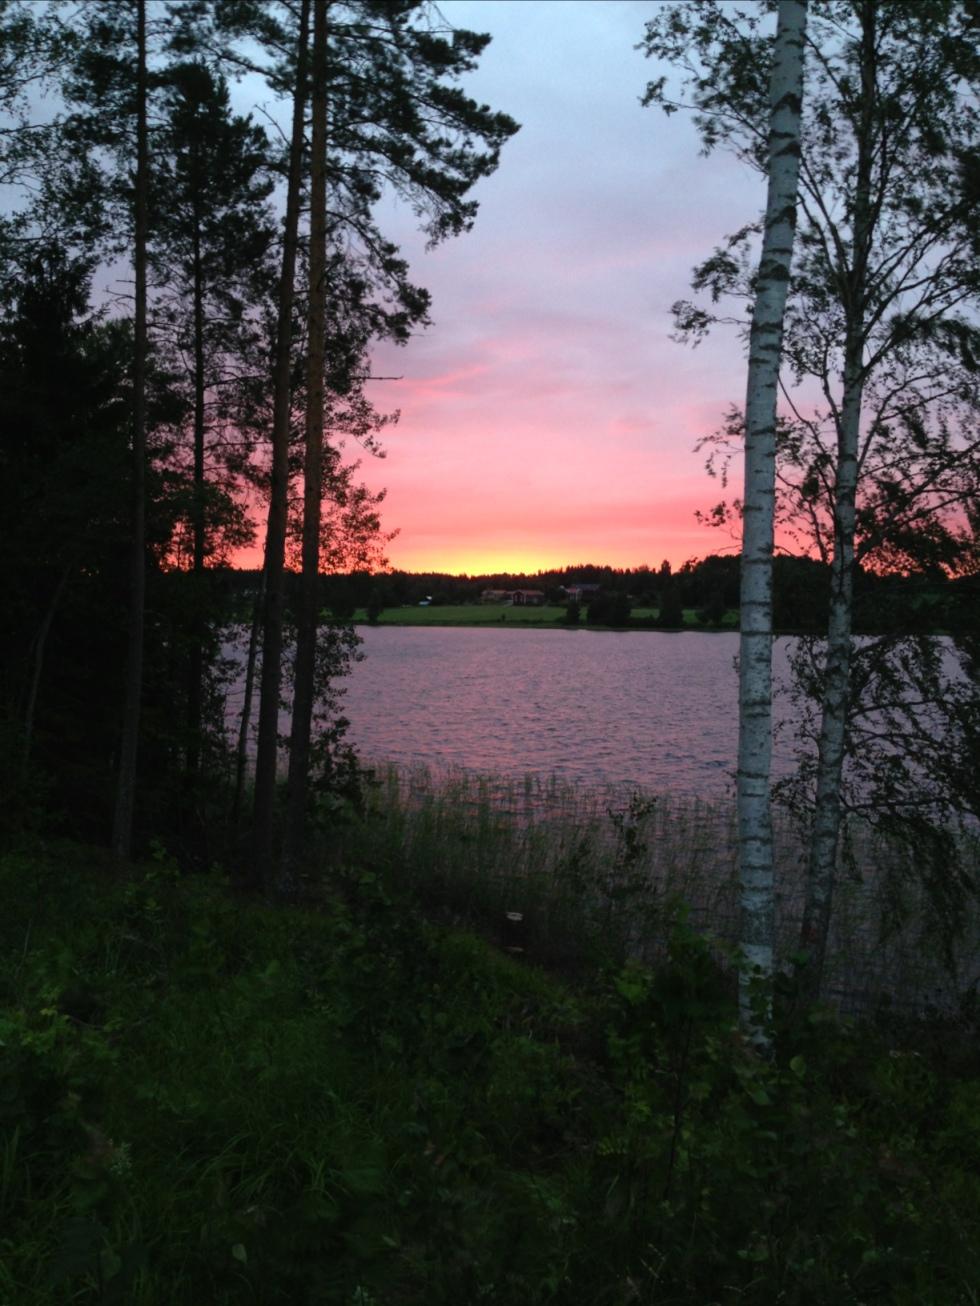 ”Mysig solnedgång. Vi var på besök hos släkten i Delsbo, Hälsingland. Och en kväll möttes vi av denna vackra solnedgången på sista hundpromenaden.”